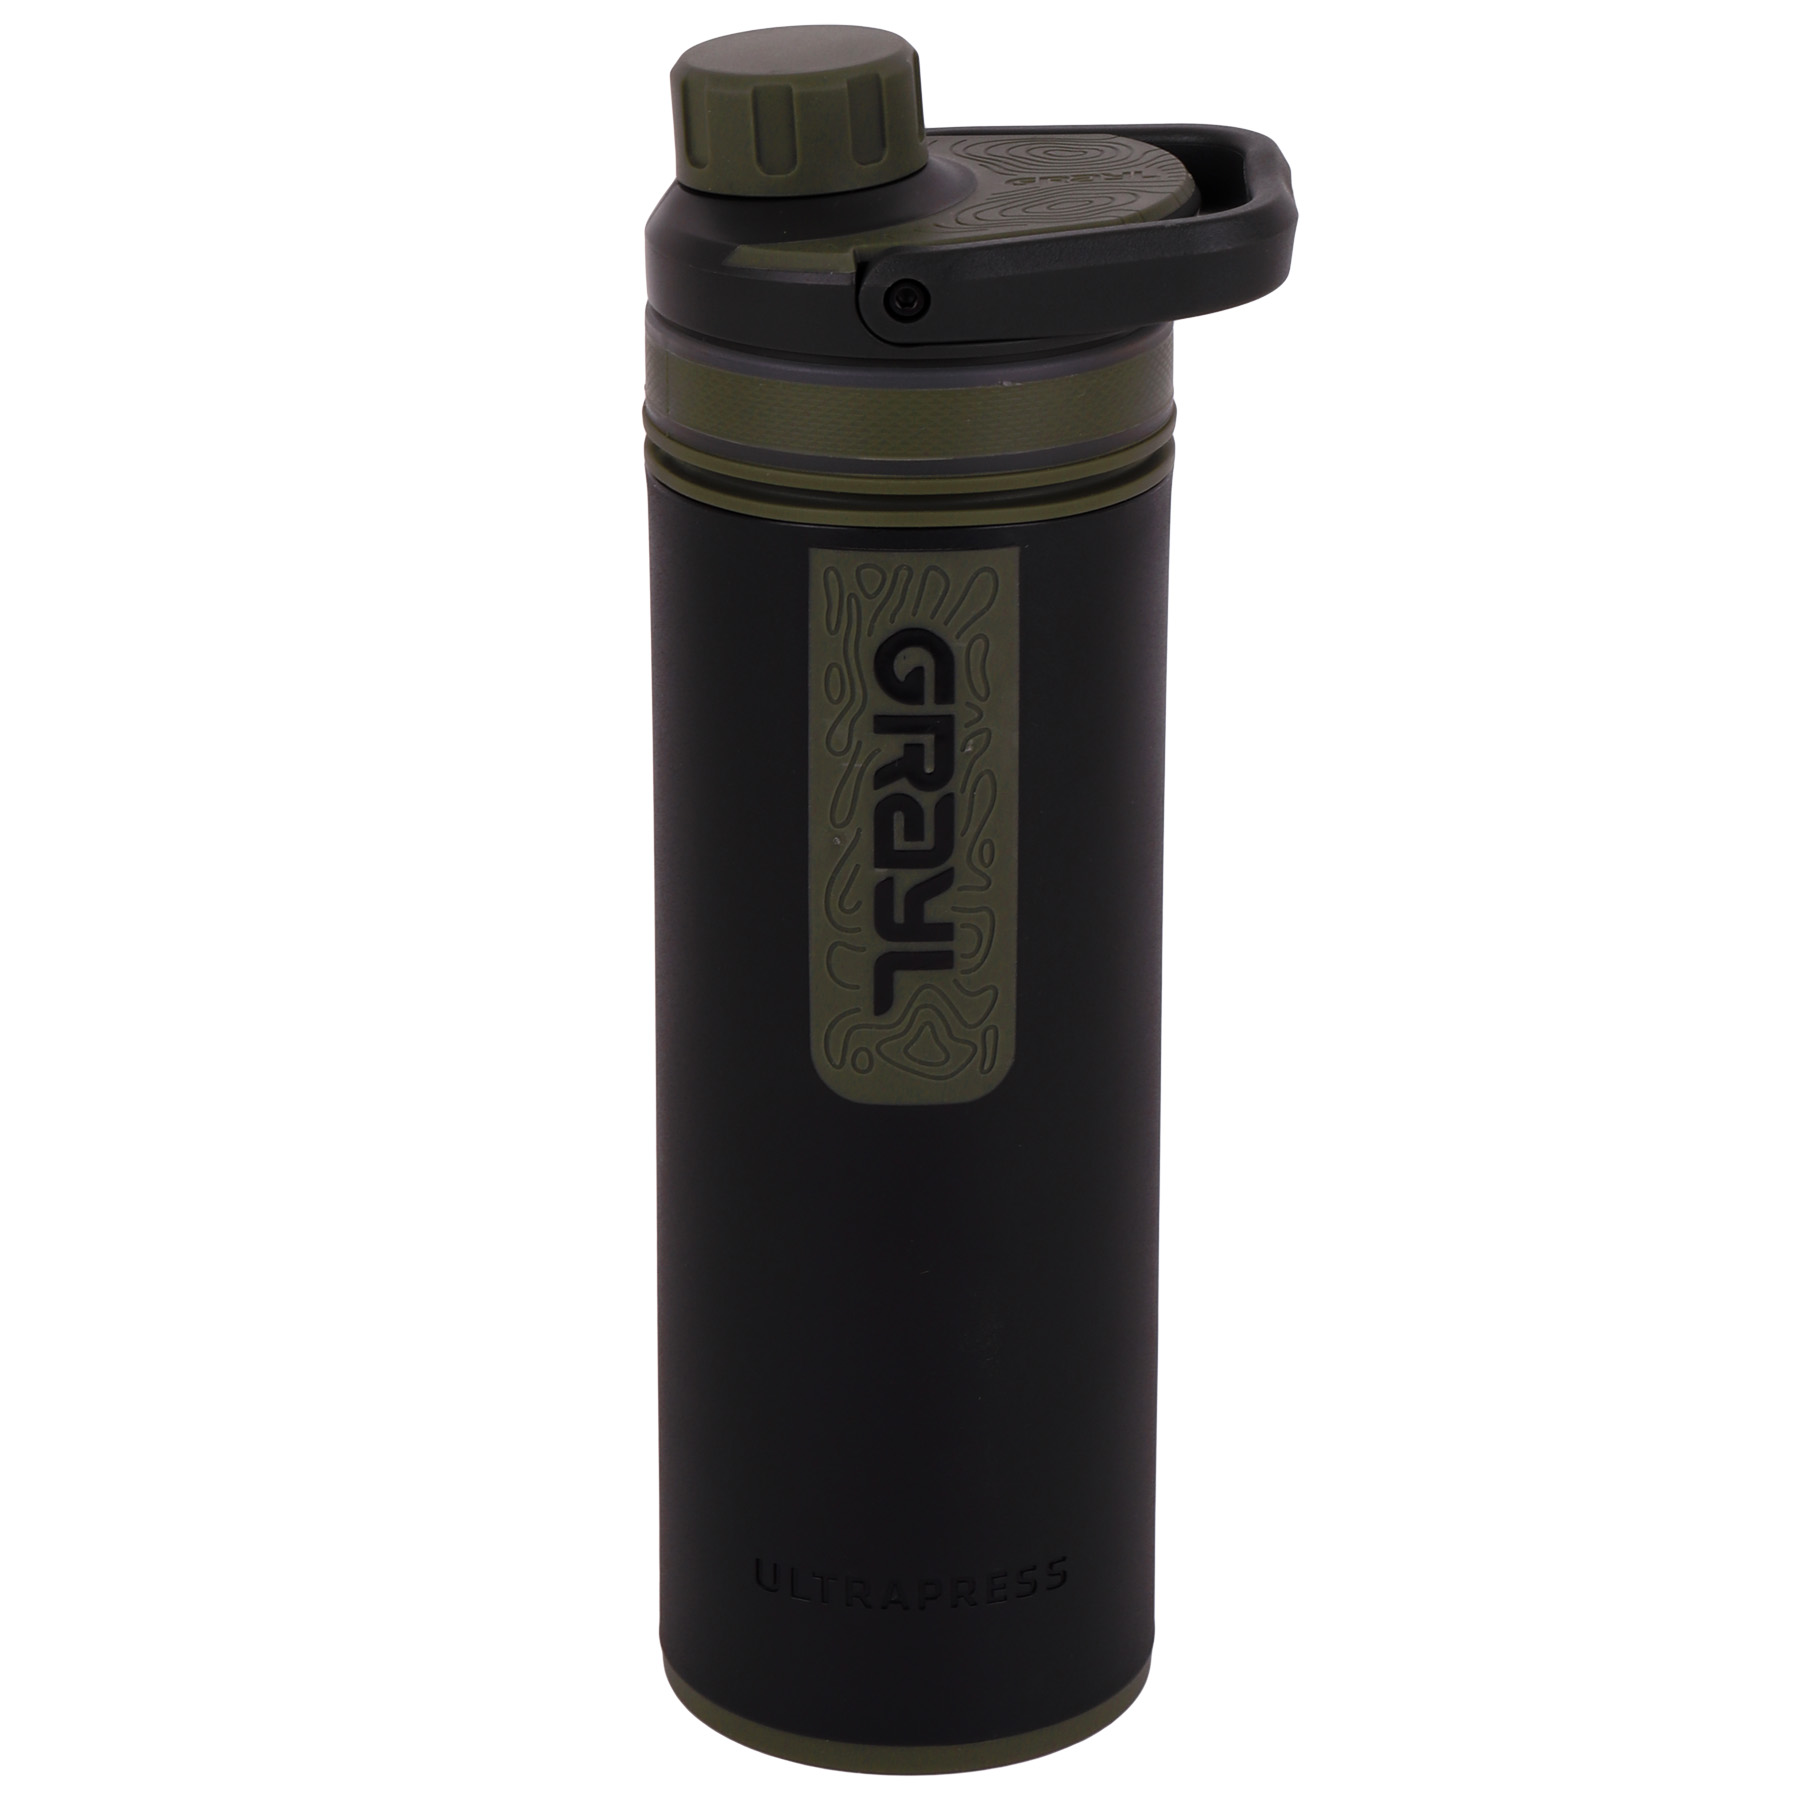 Produktbild von Grayl UltraPress Purifier Trinkflasche mit Wasserfilter - 500ml - Camp Black